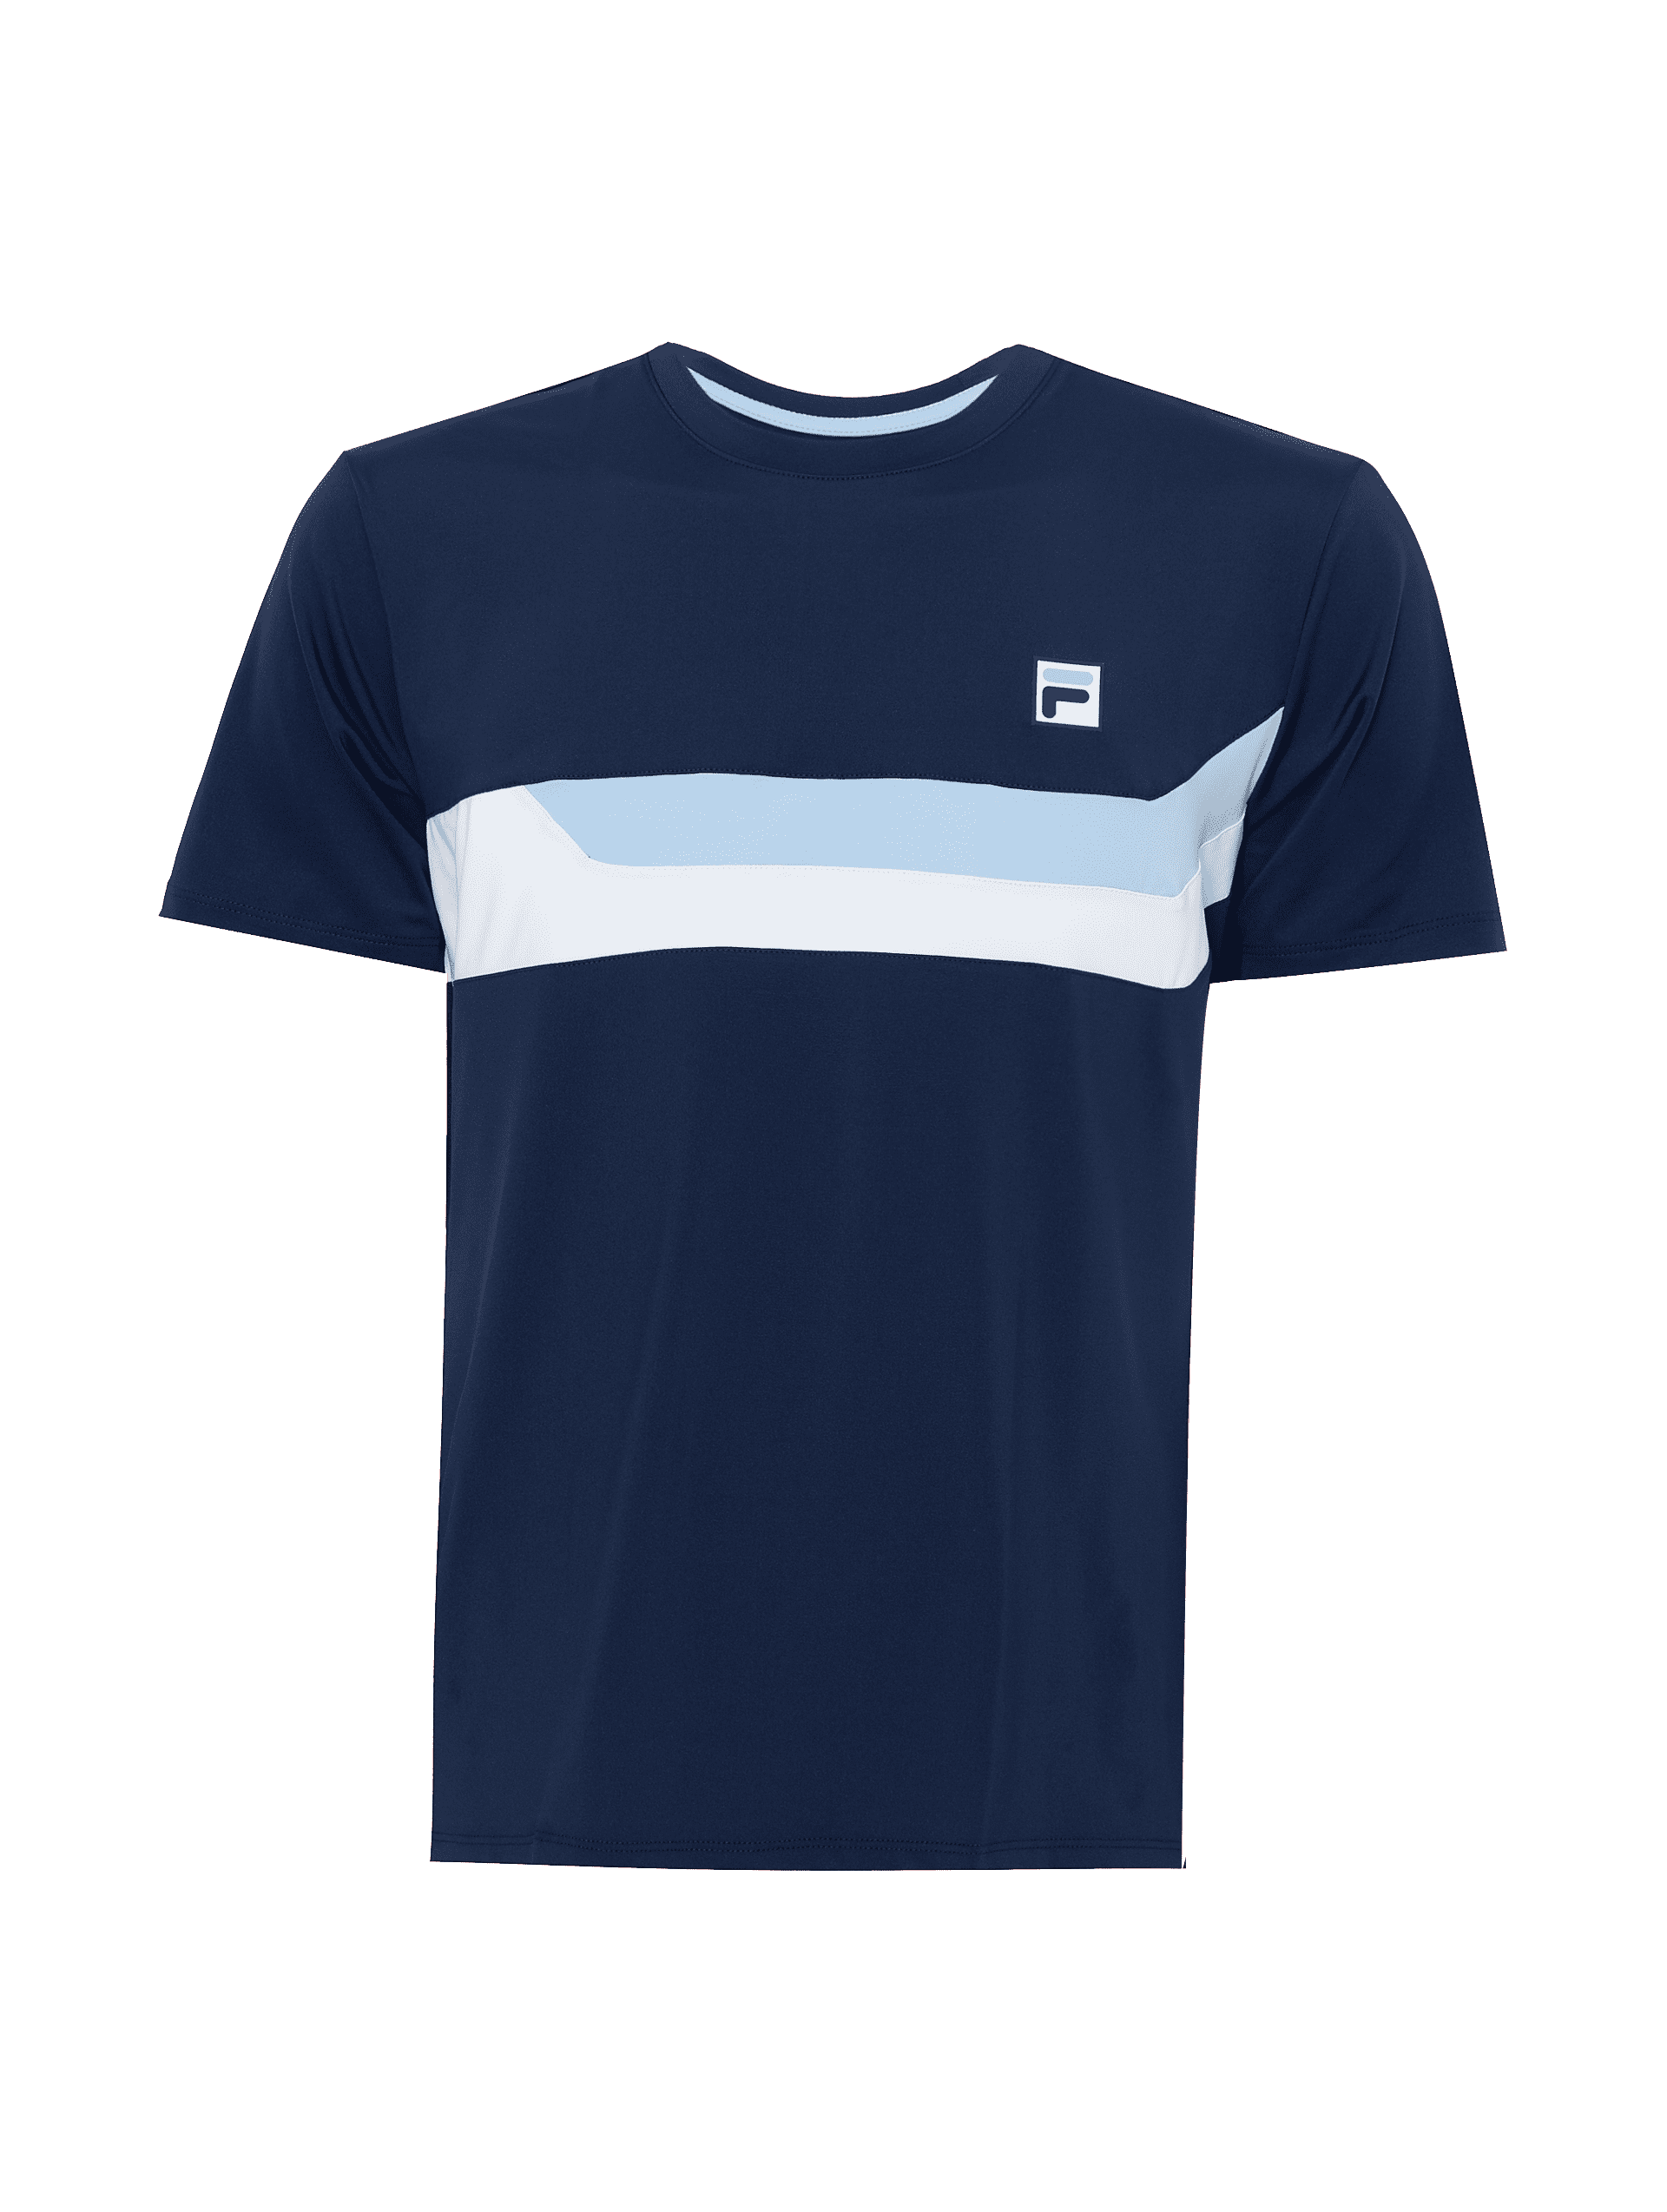 Camiseta Fila Australian Open Masculina